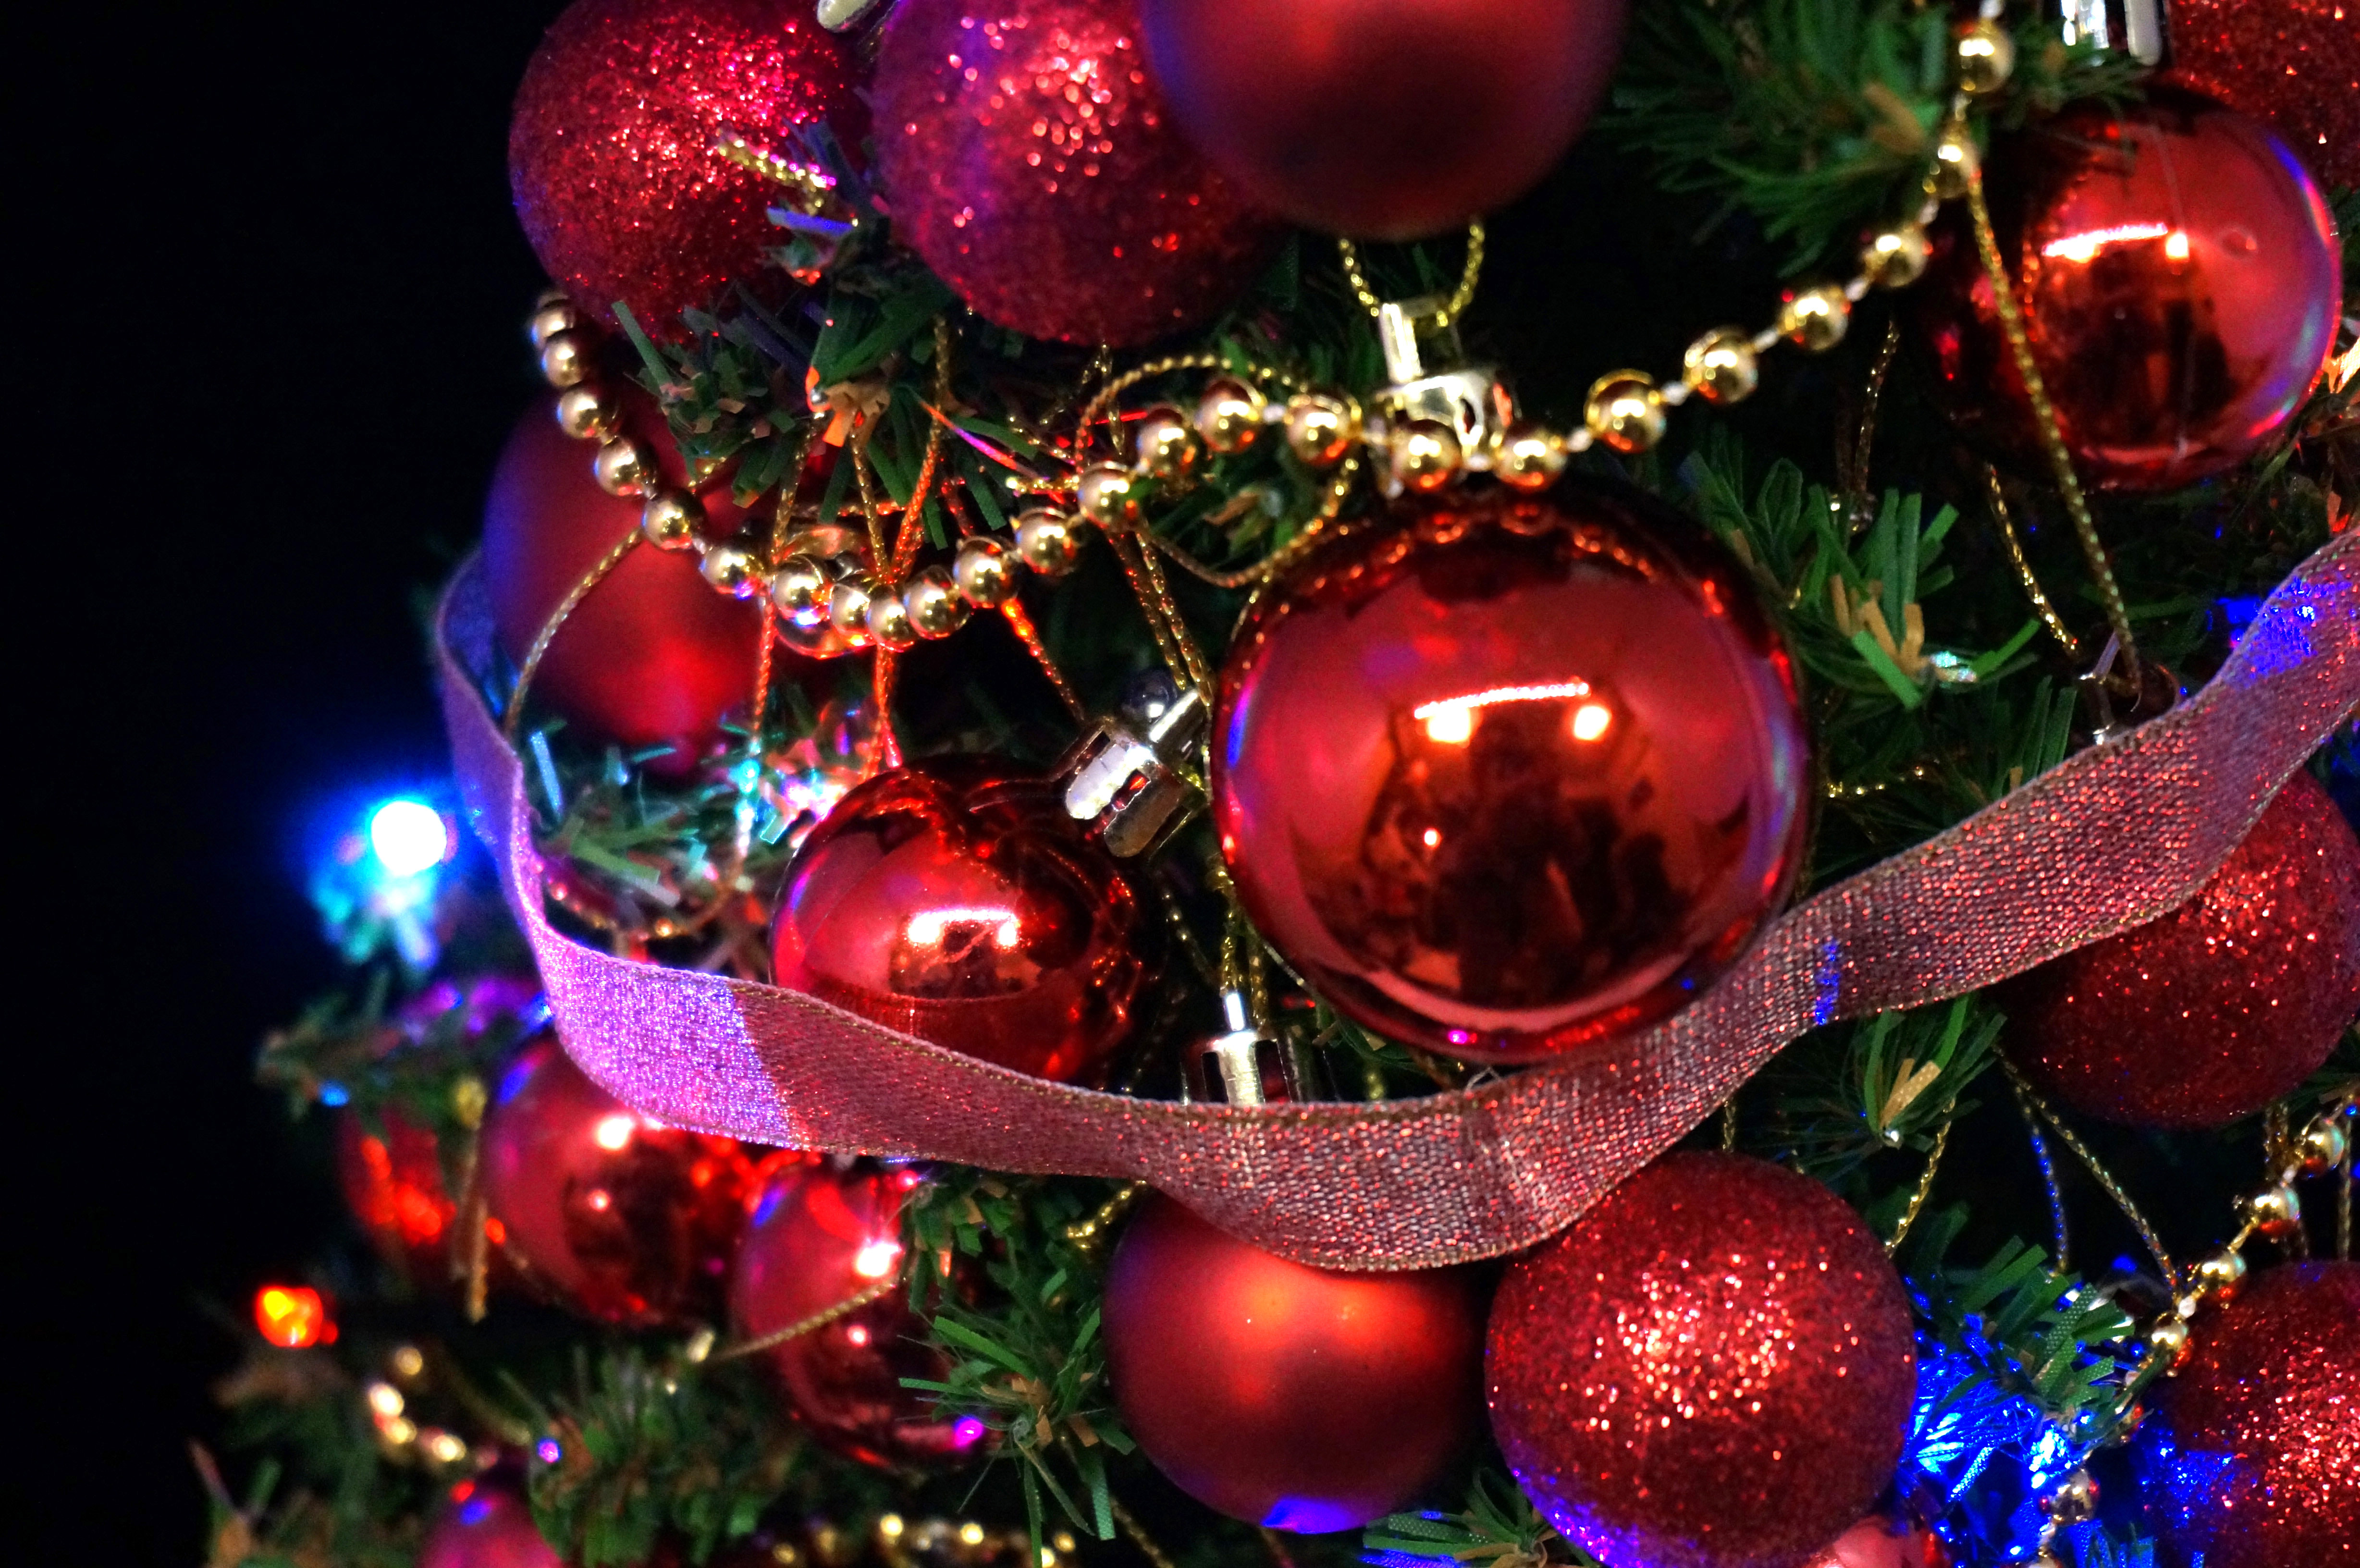 ミニクリスマスツリー 七色に色が変わる自作のledイルミネーションがクリスマス気分を盛り上げる ちょいプラ素材